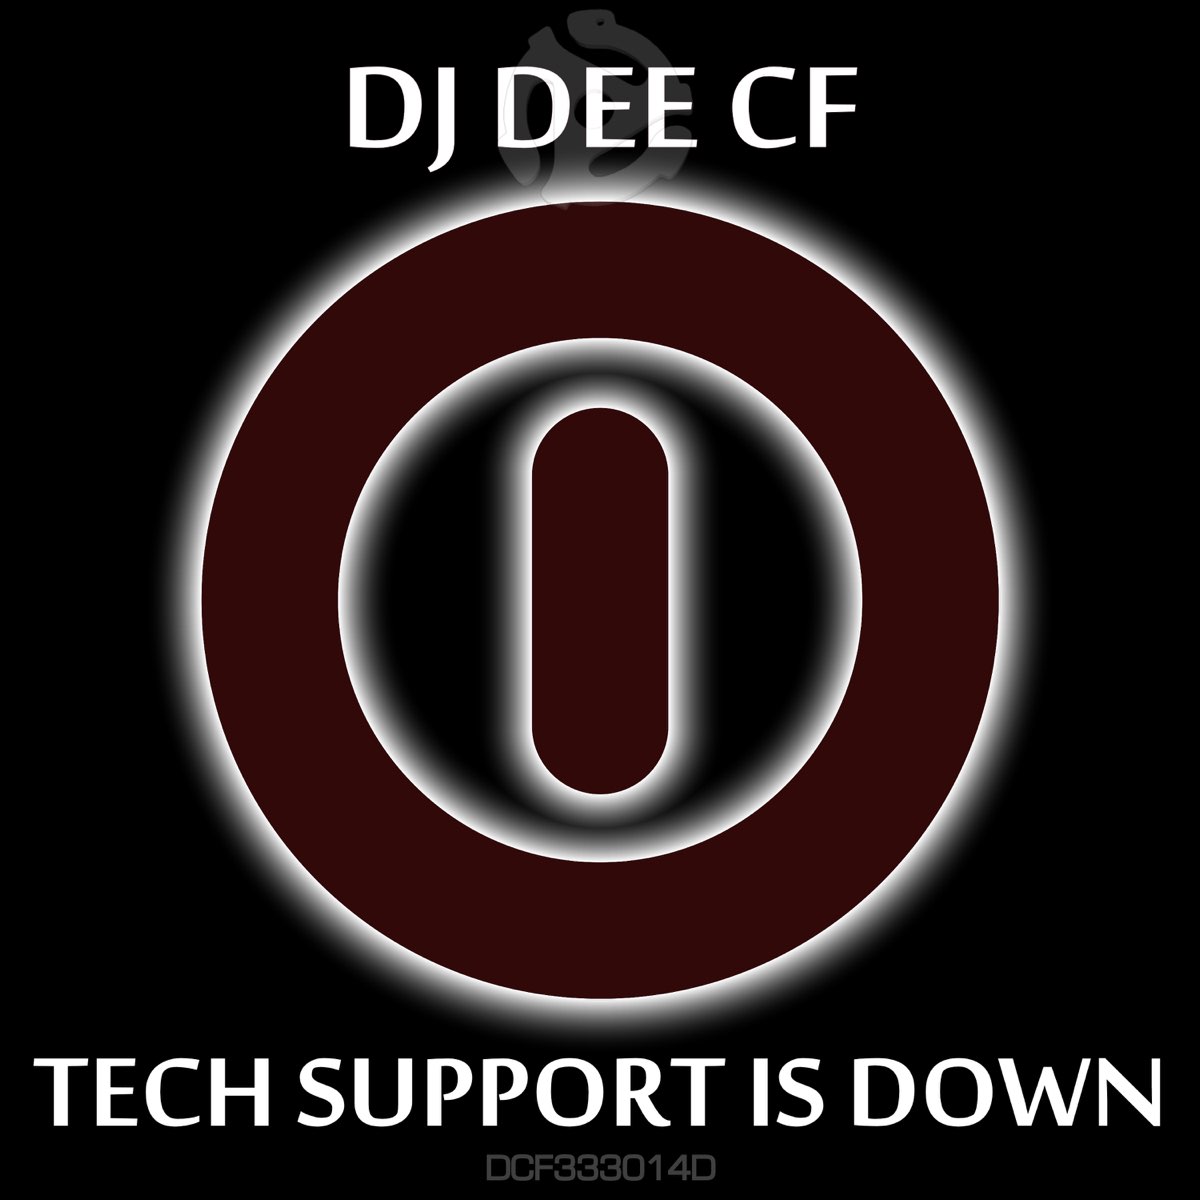 DJ Dee Mac. Dj dee